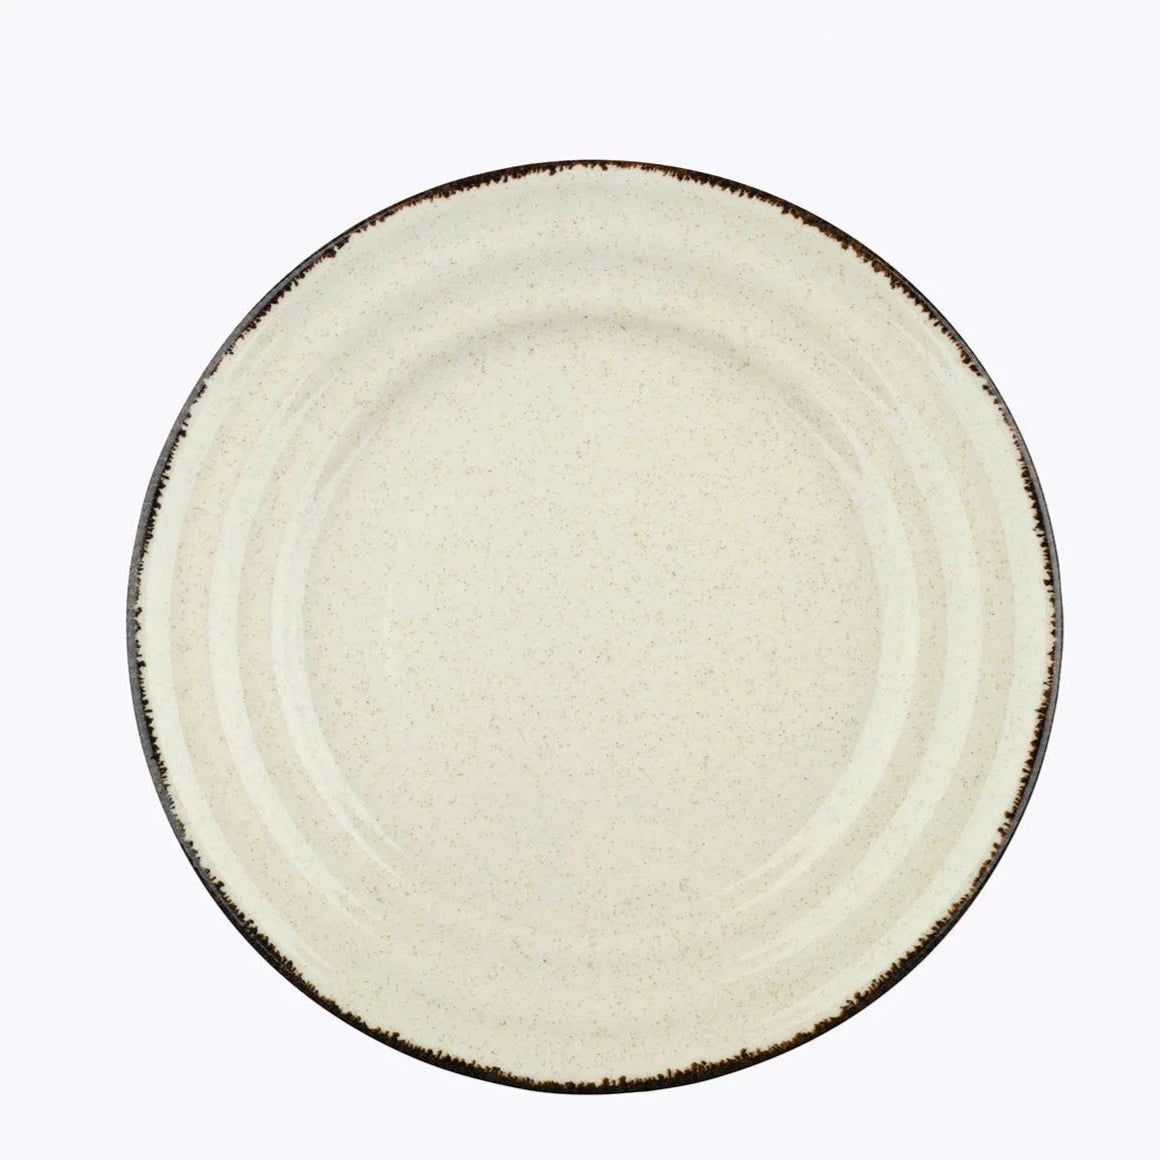 Samni dinner set 24 porcelain plates